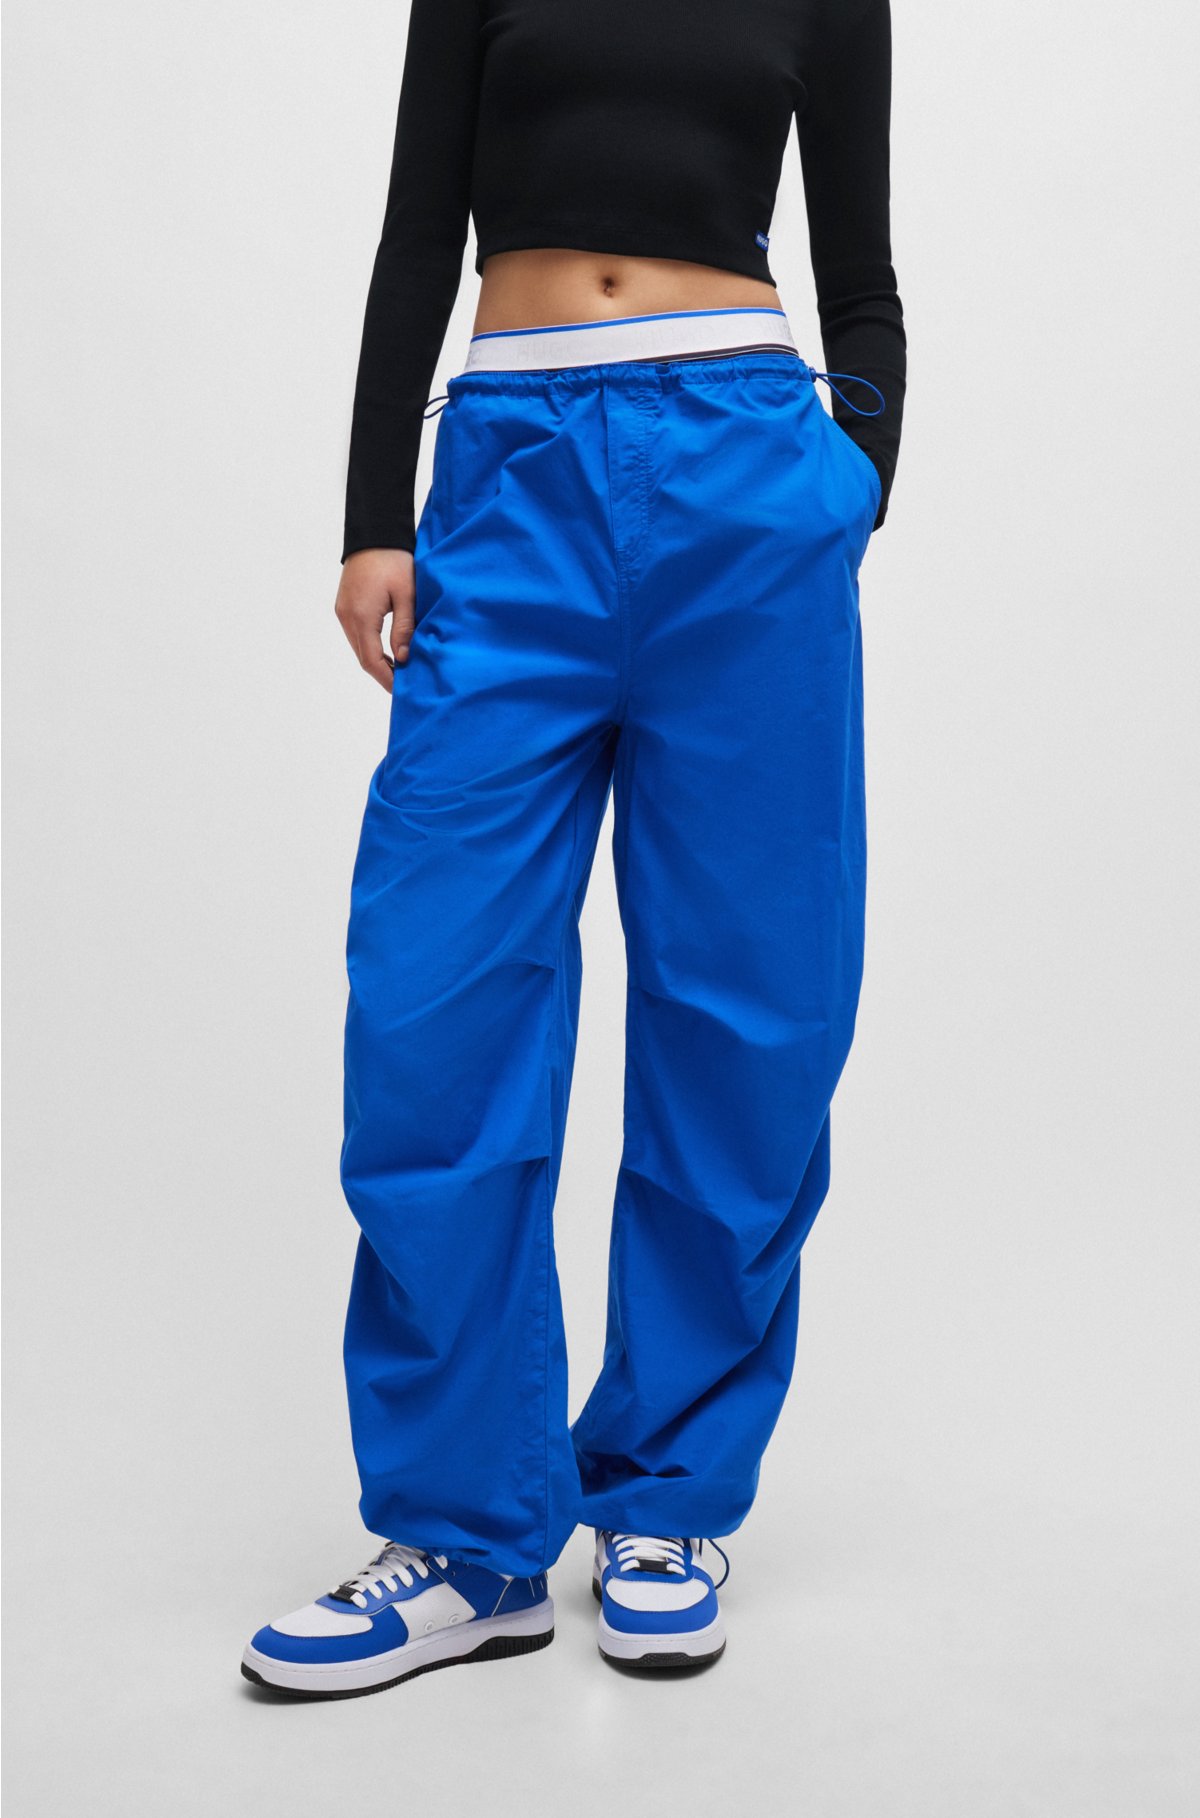 Parachute Blue Baggy Pants